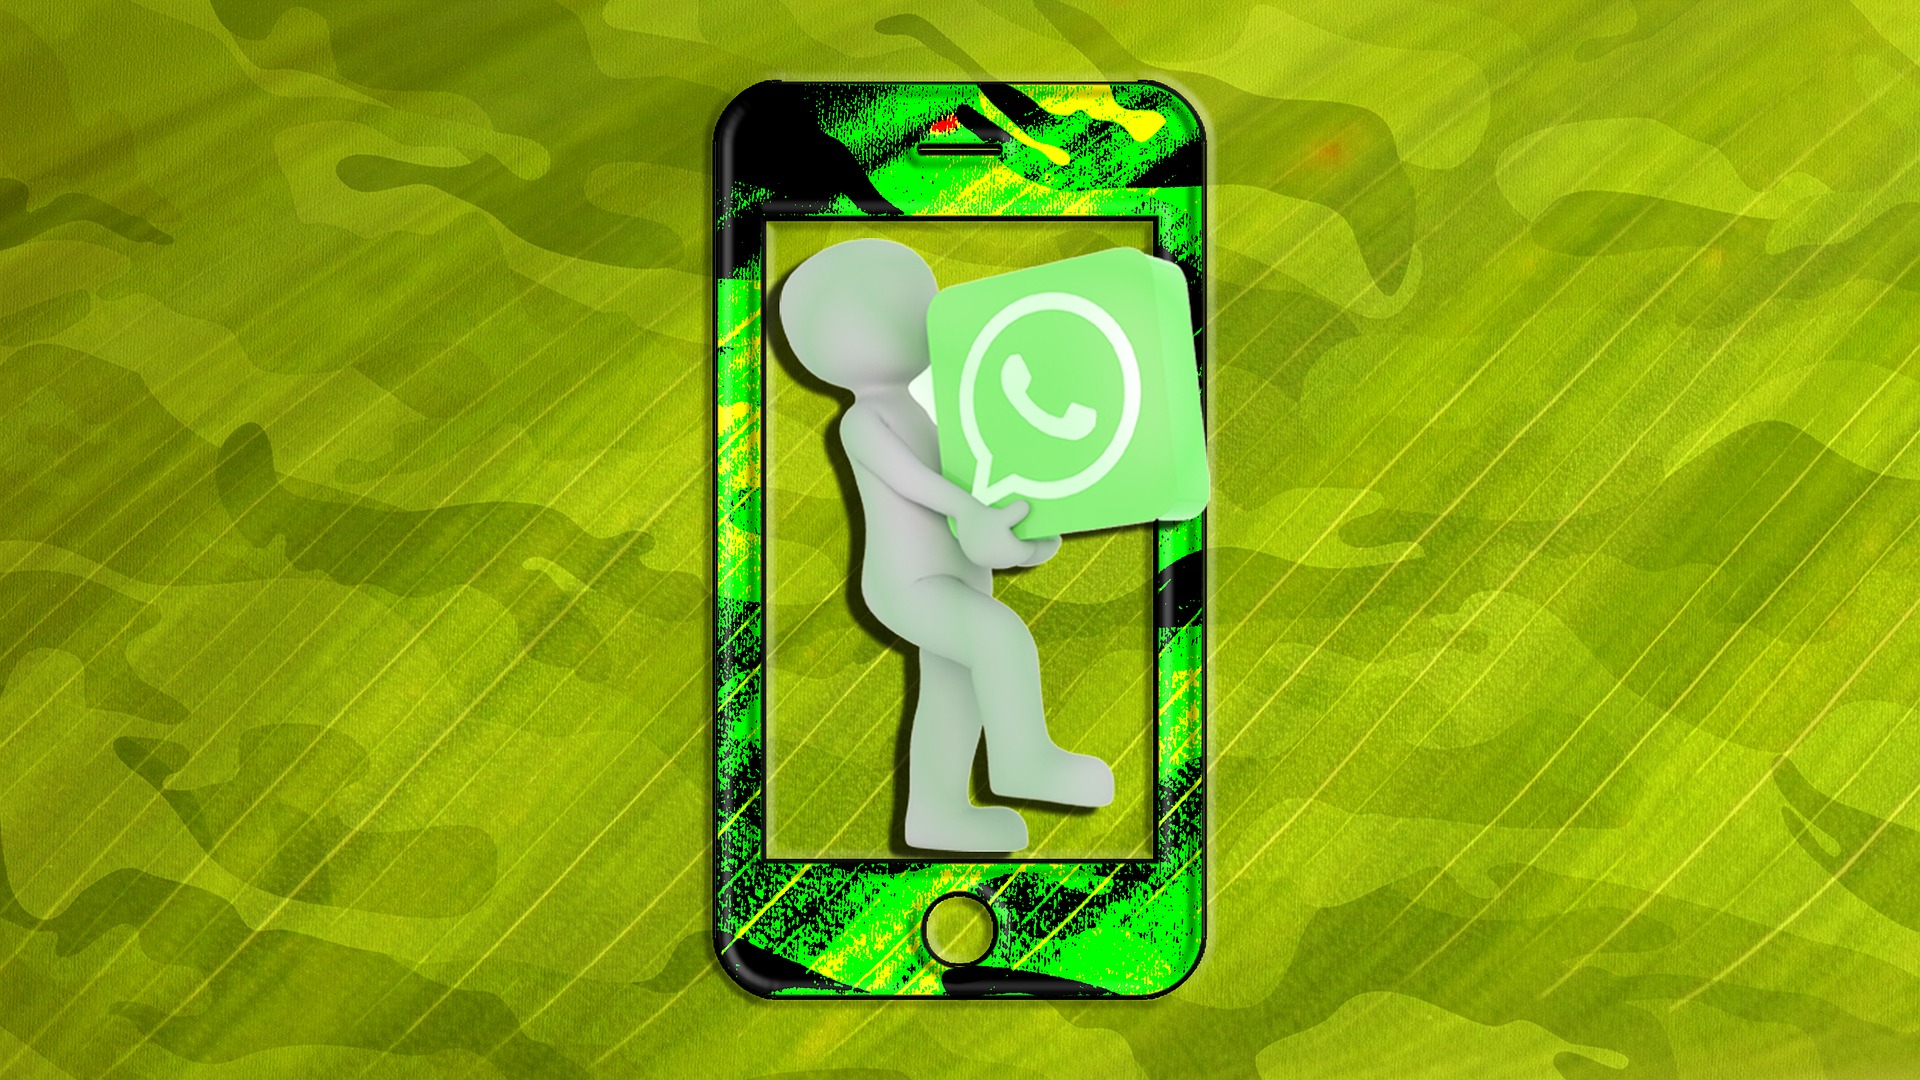 WhatsApp sigue siendo una de las plataformas de mensajería más utilizada en el mundo. (Foto Prensa Libre: Pixabay)